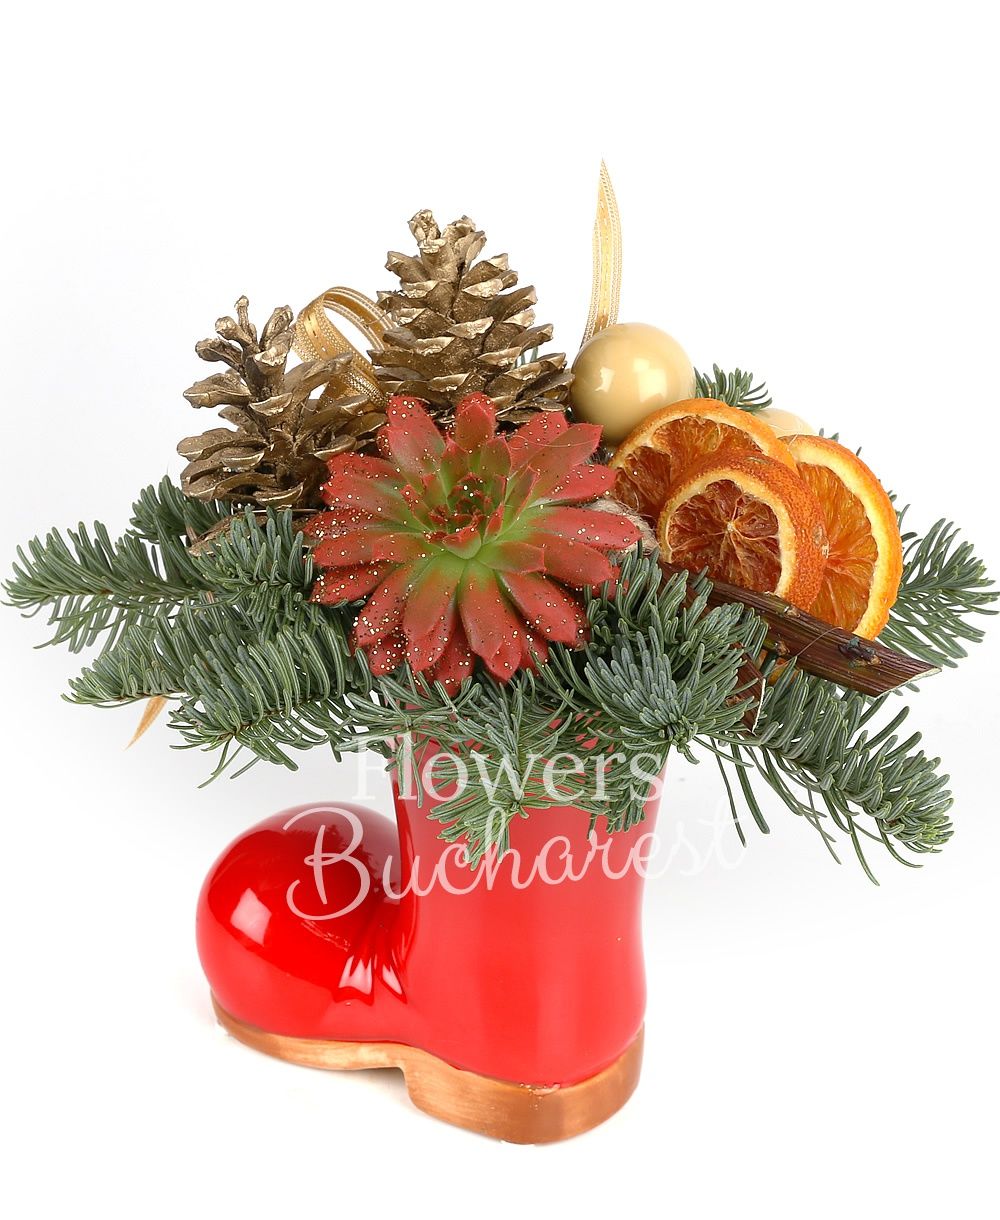 1 echeveria, cones, globes, dried orange, ceramic vase